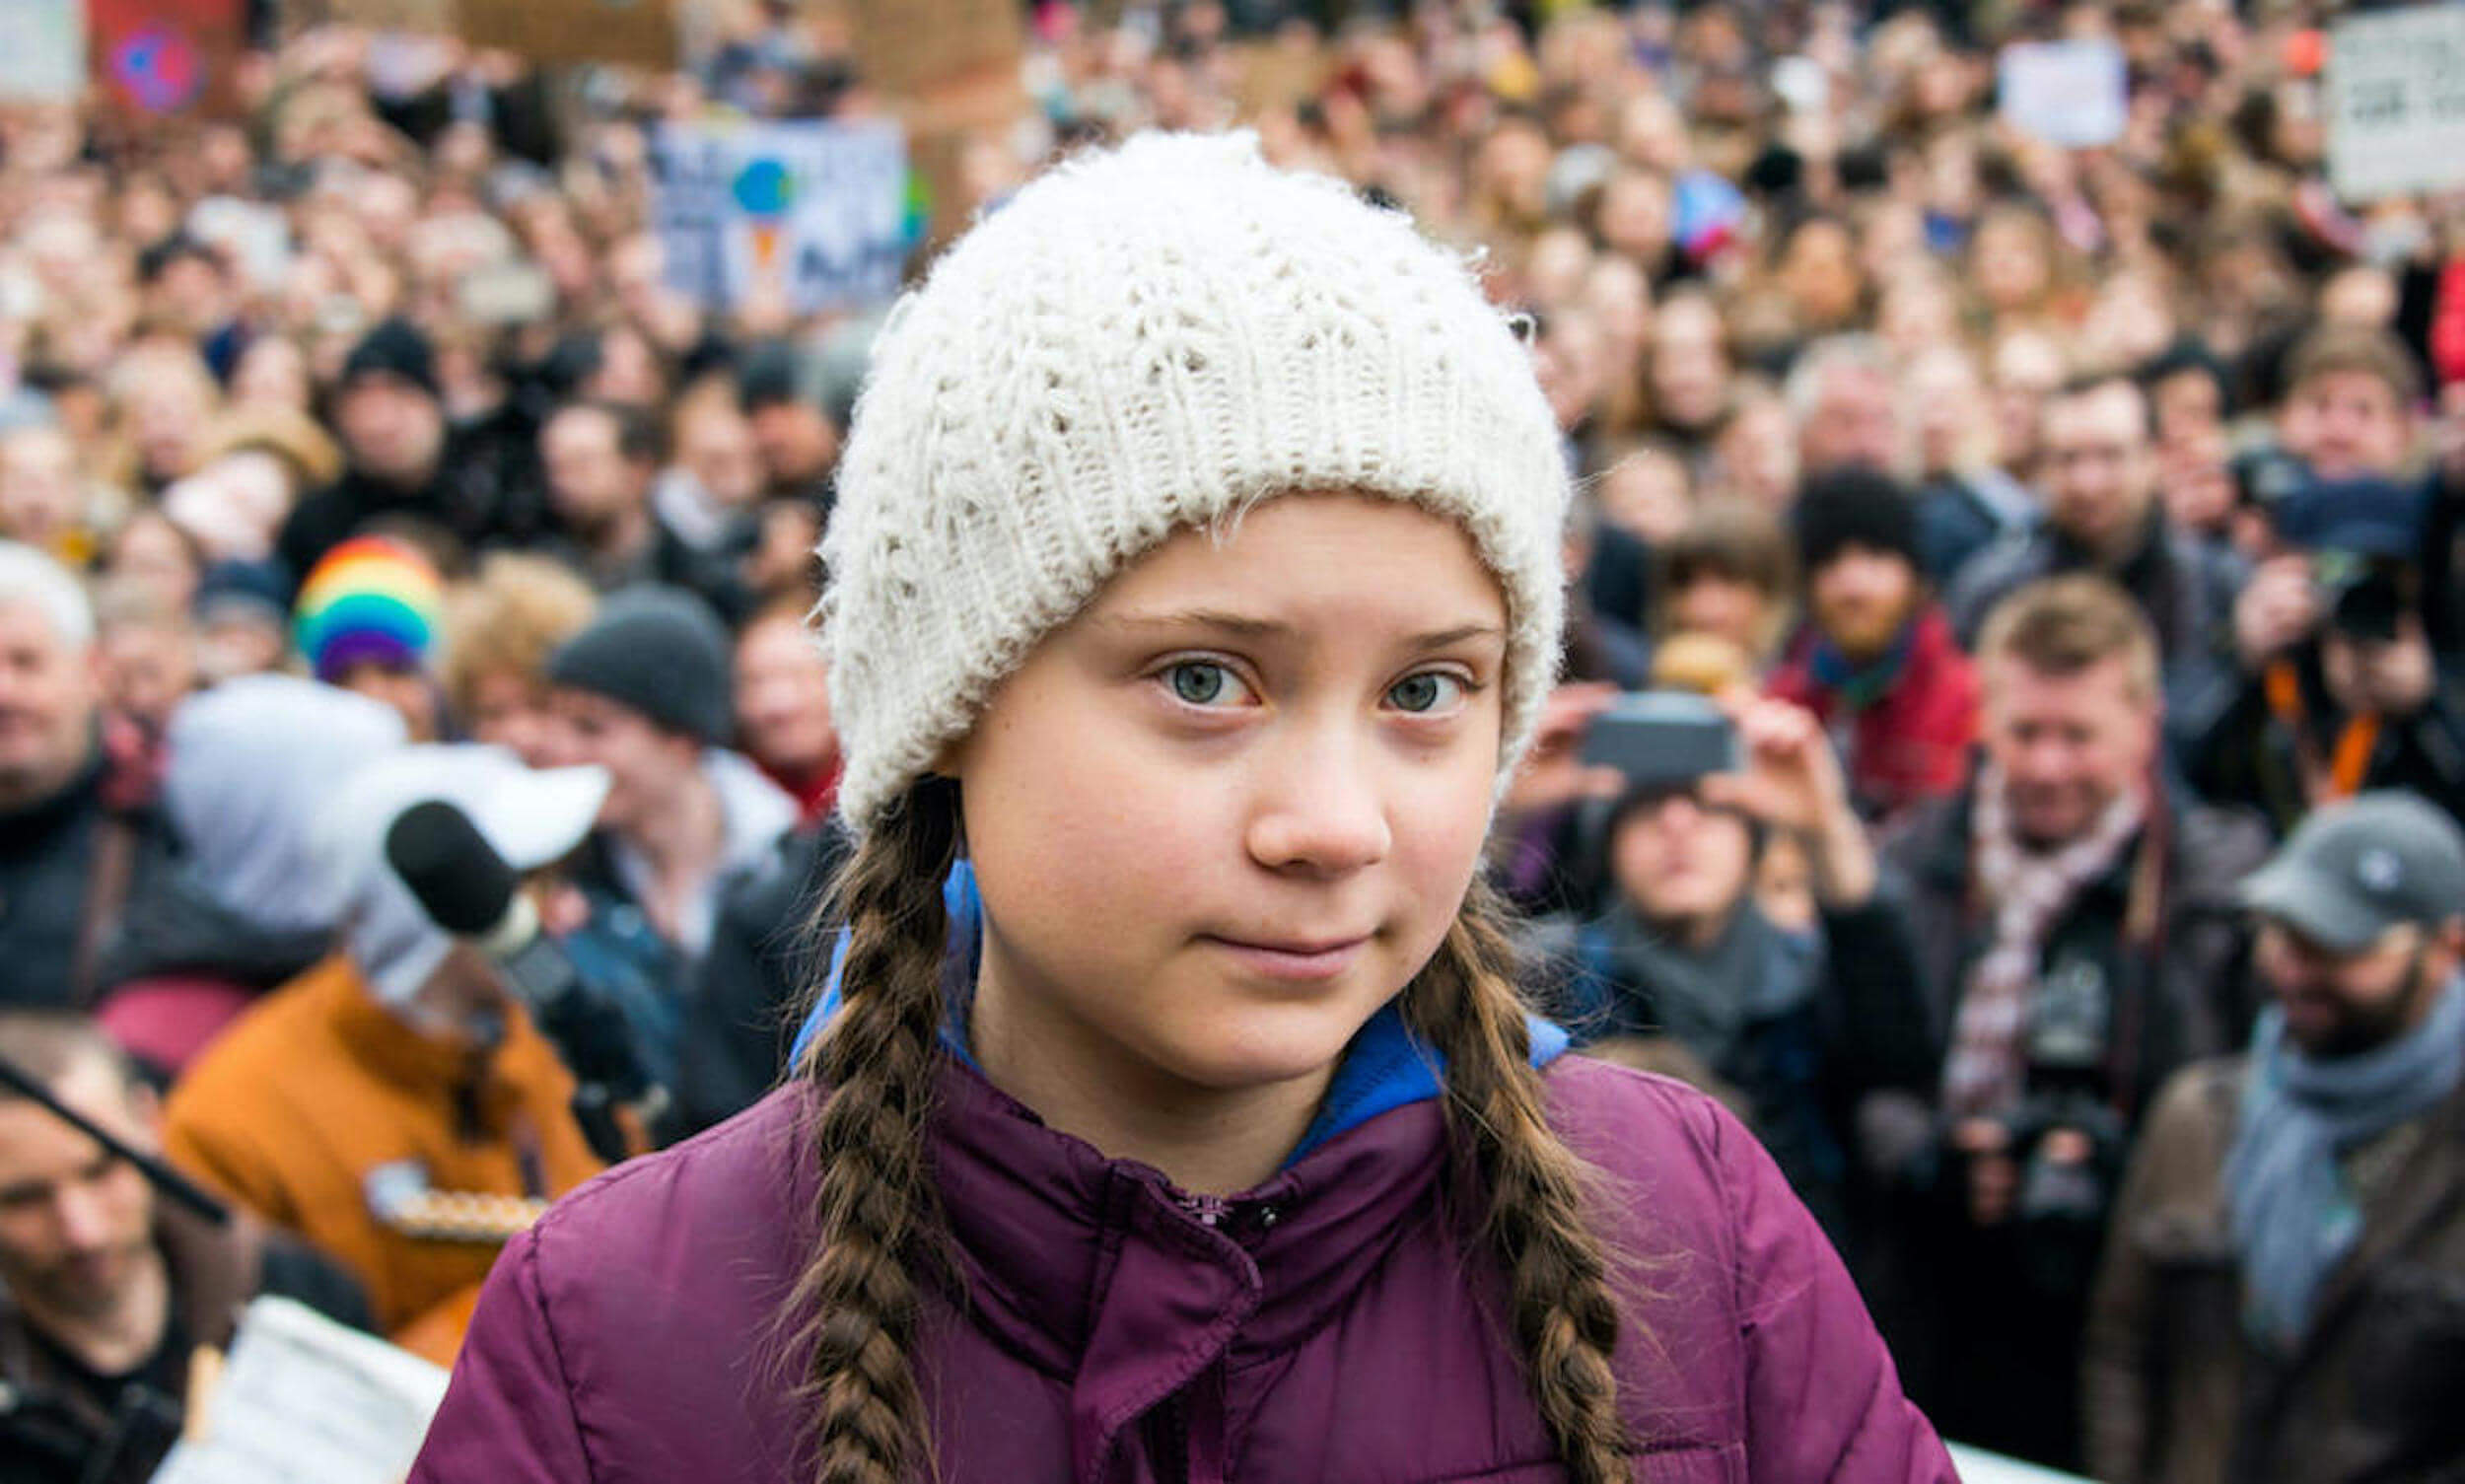 Greta Thunberg amongst hundreds of climate activists